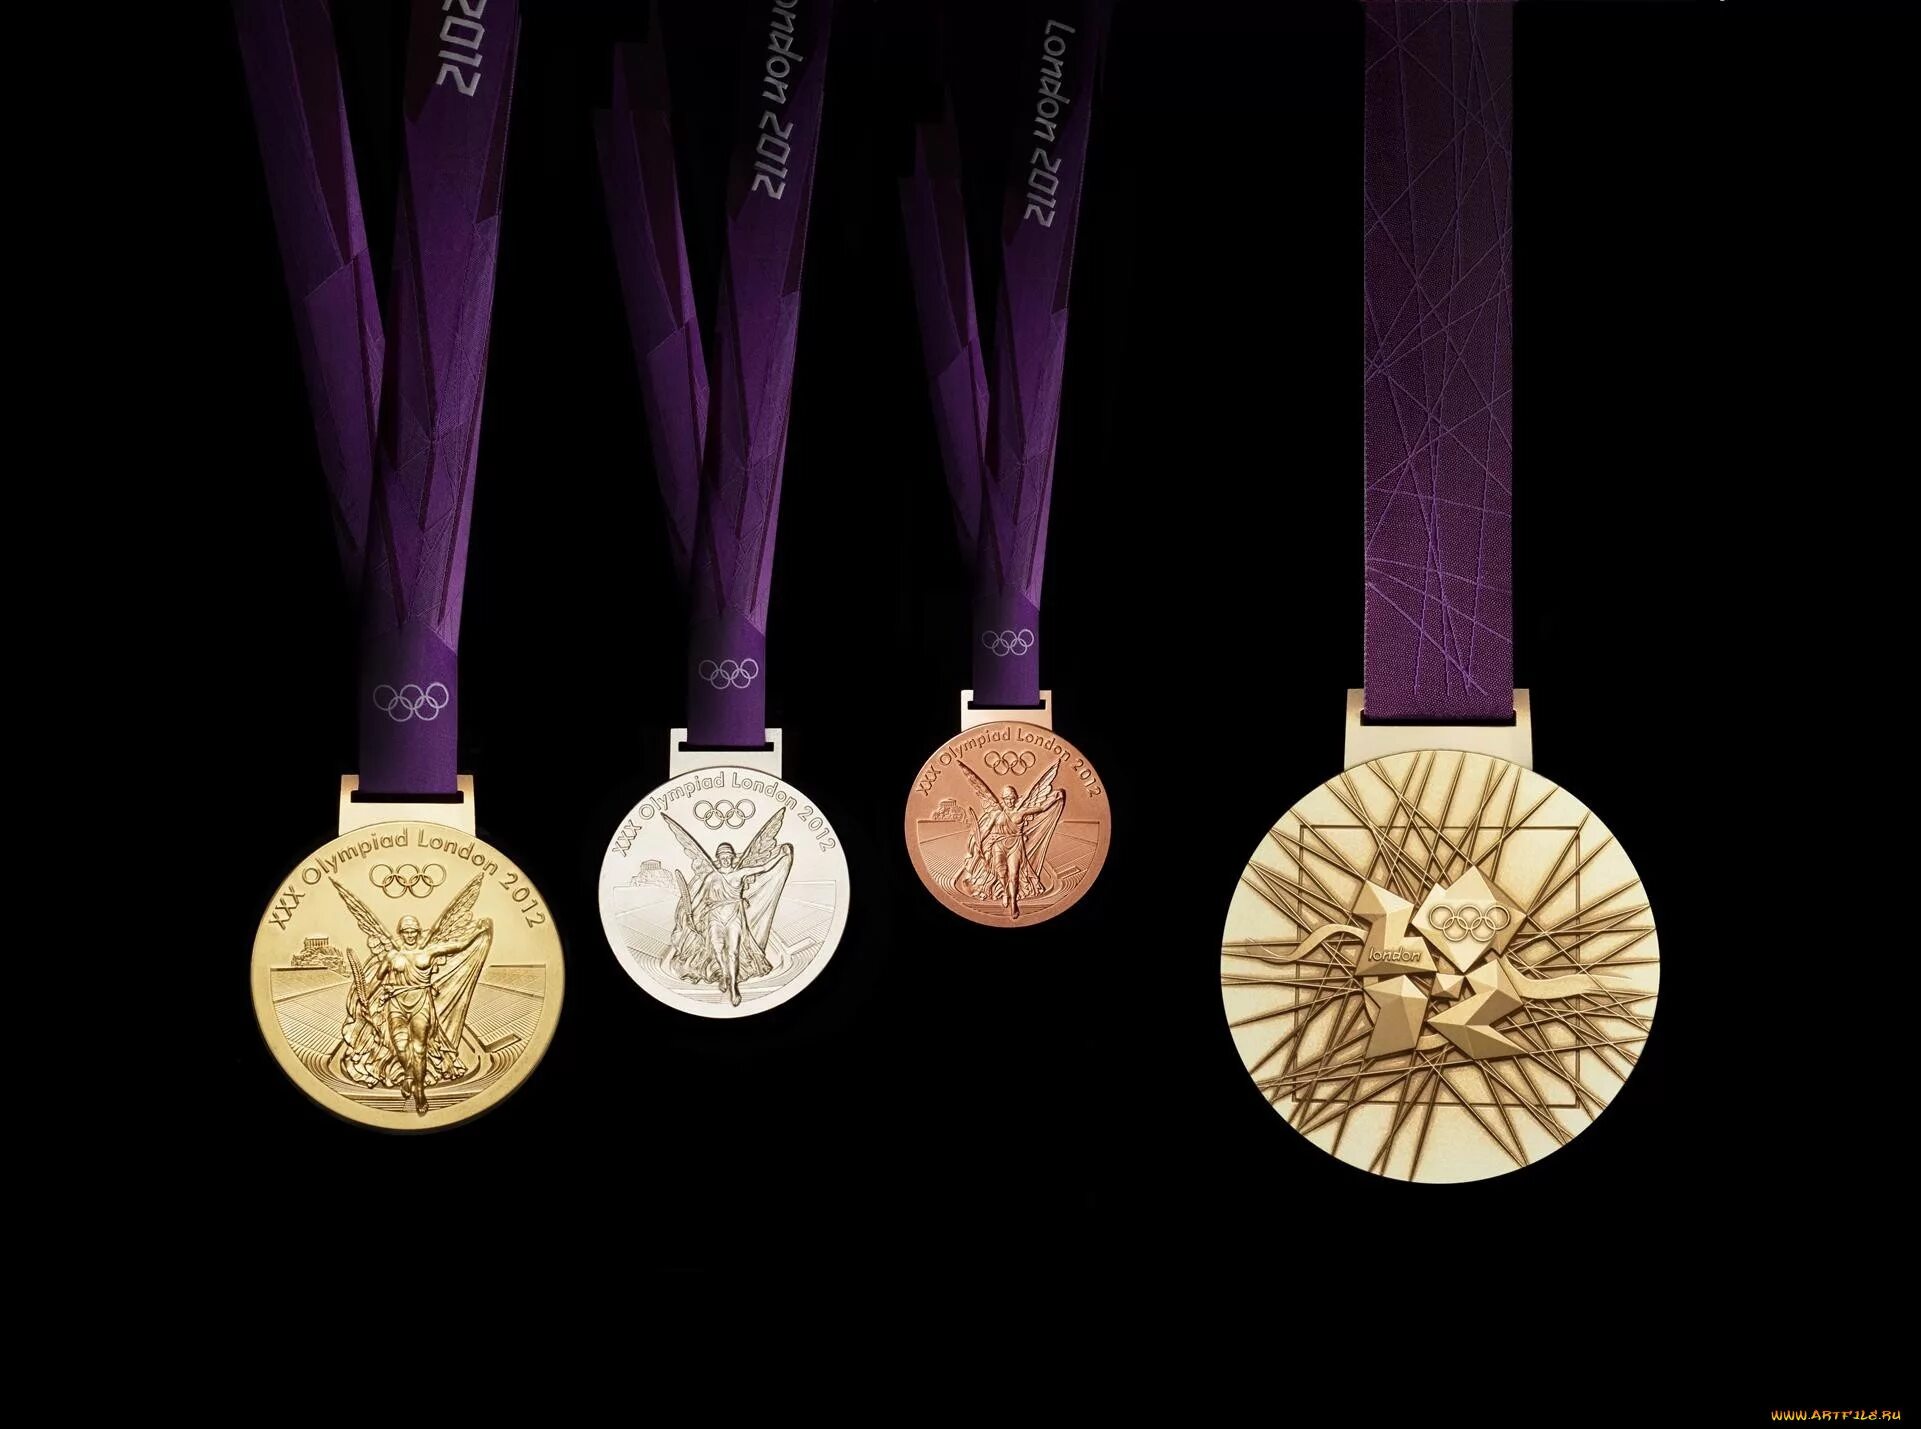 Олимпийская медаль Лондон 2012. Олимпийские игры 2012 Лондон медали. Медали Олимпийских игр 2012. Медали дизайнерские. Различные награды